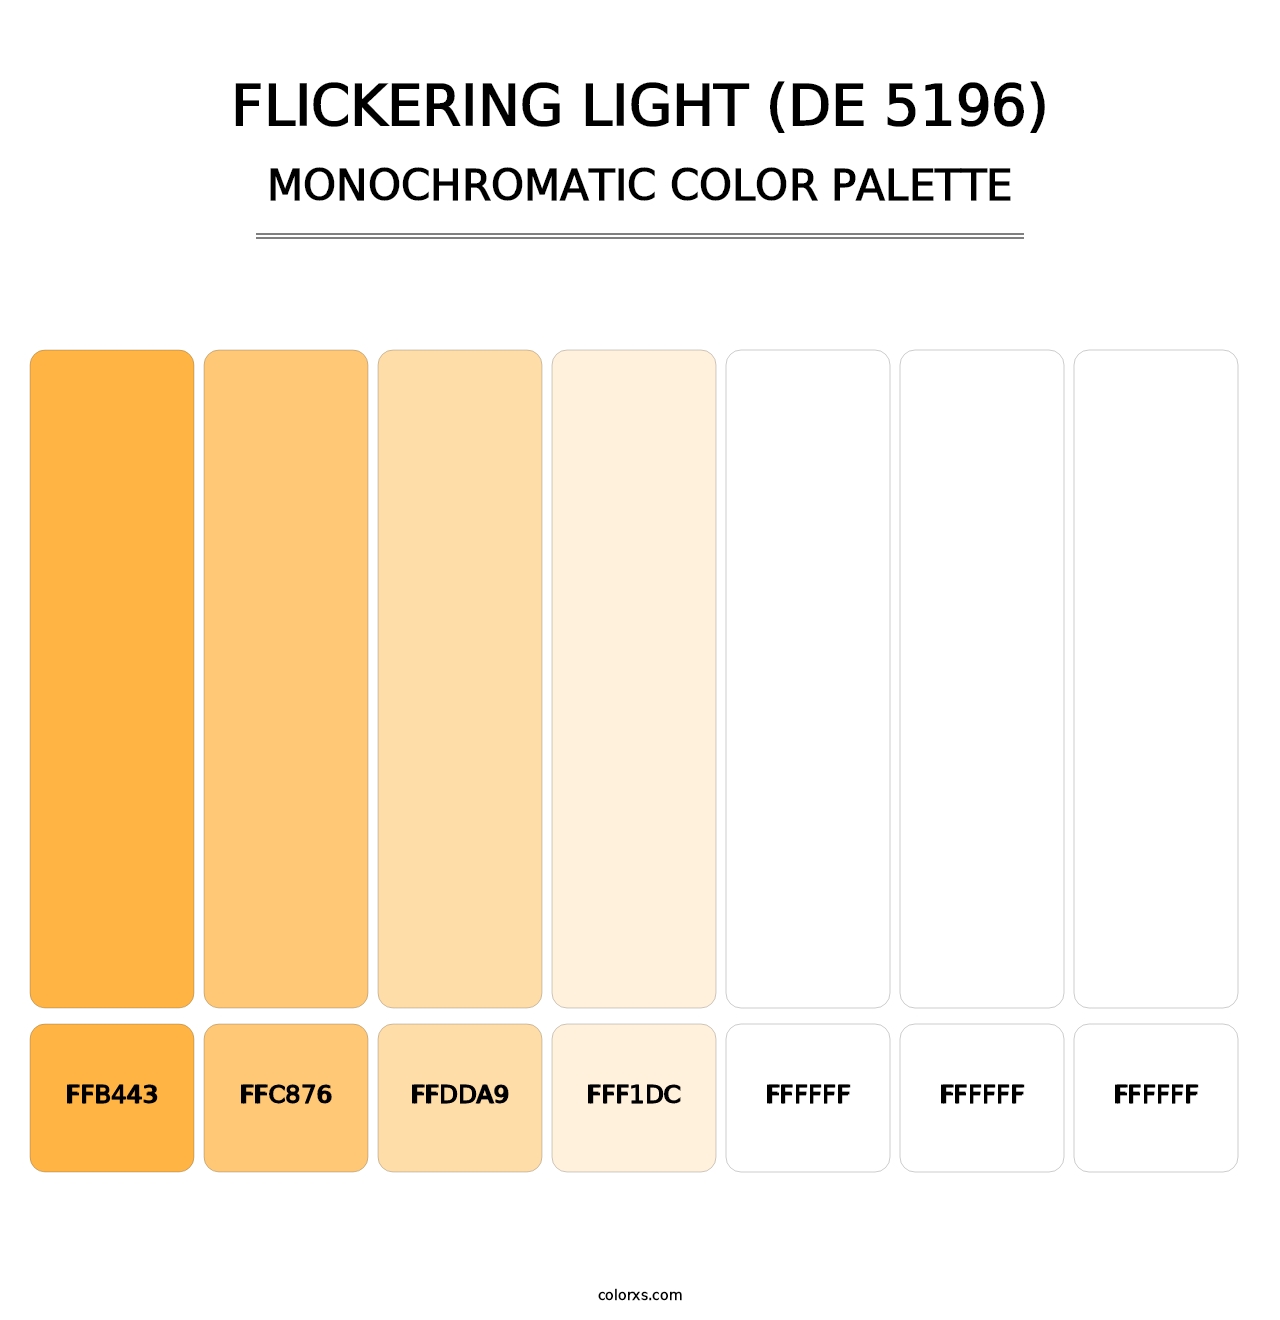 Flickering Light (DE 5196) - Monochromatic Color Palette